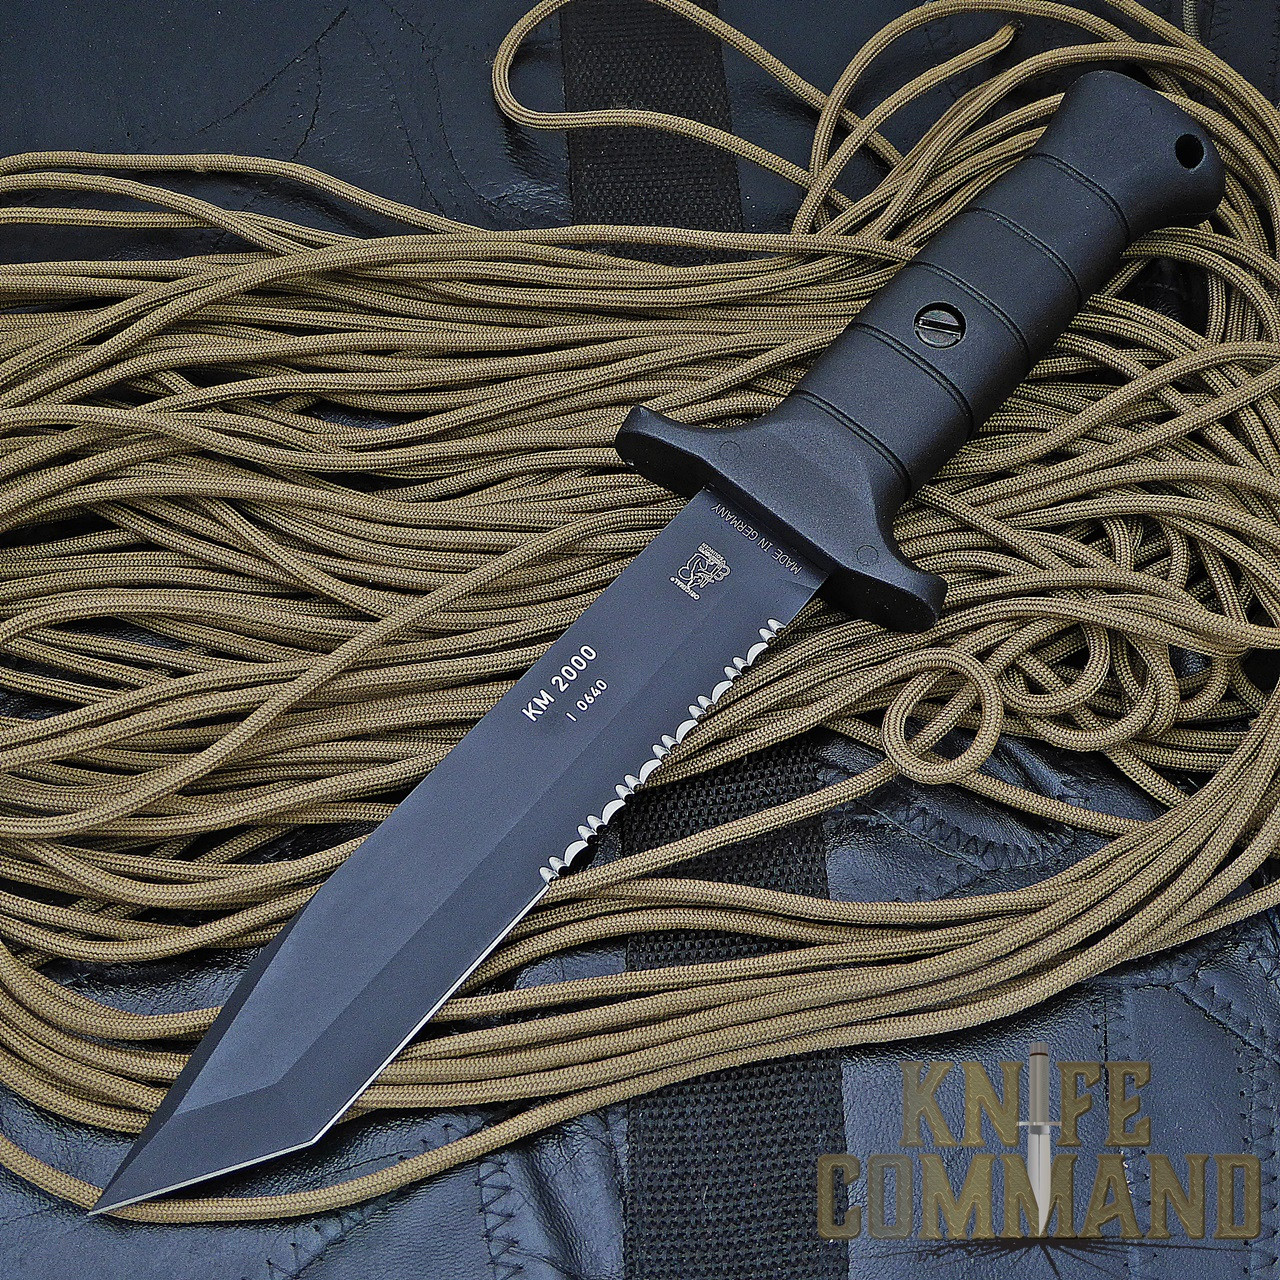 Eickhorn Solingen KM 2000 Combat Knife.  Upgraded design and steel.